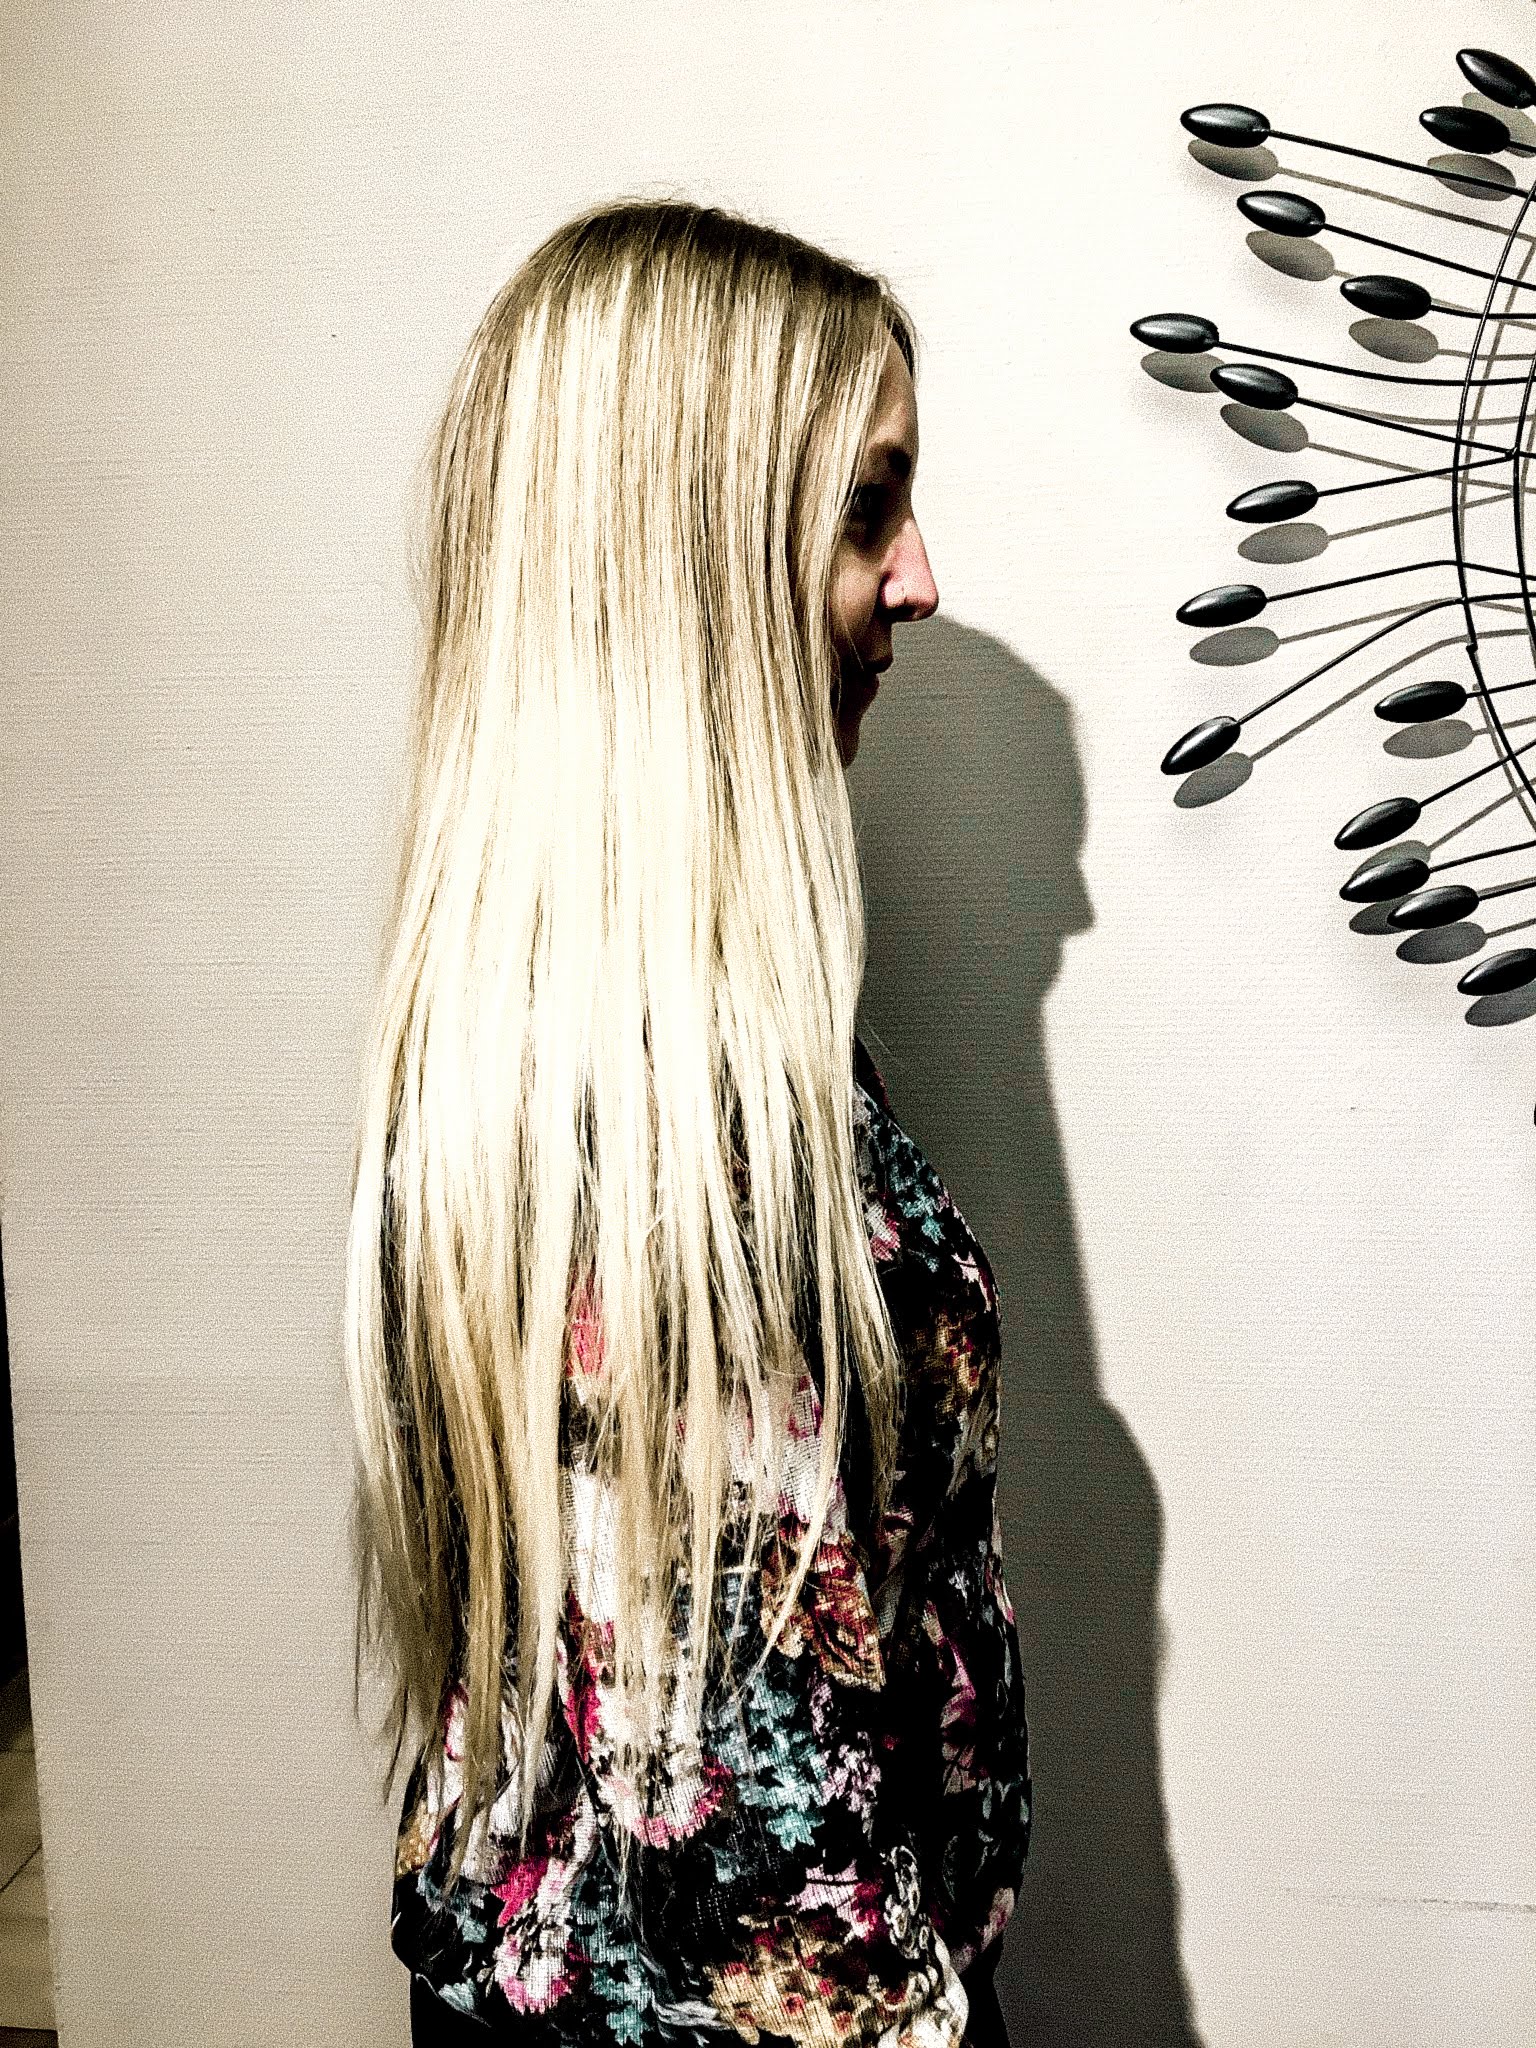 Profil langes blondes Haar